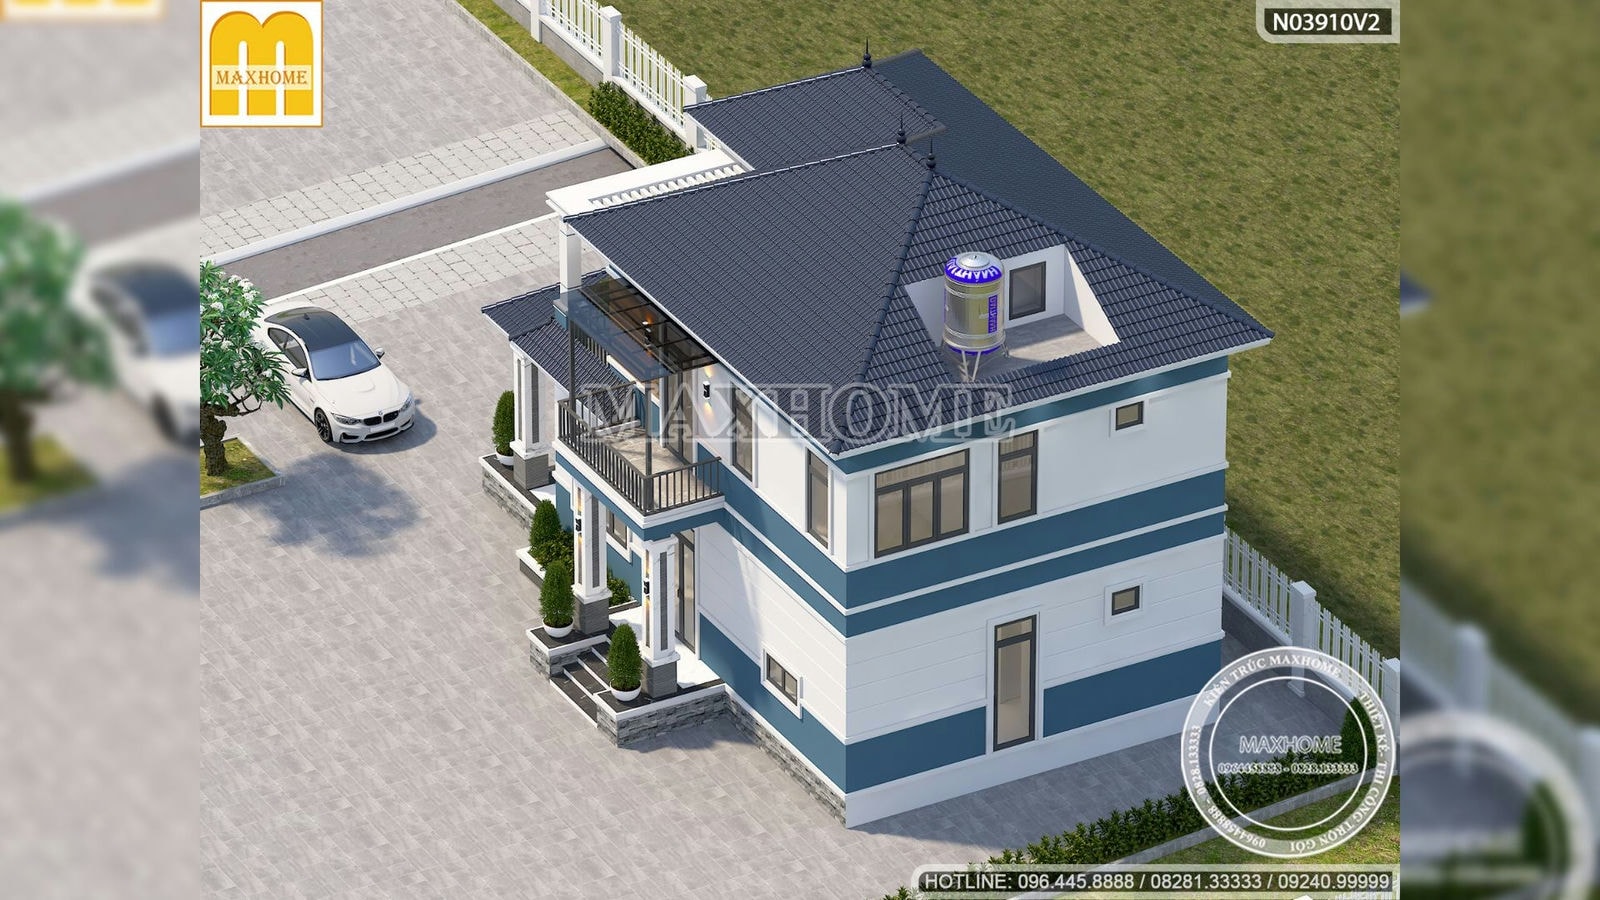 Bản thiết kế mẫu nhà quốc dân 2 tầng mái Nhật ở Maxhome | MH01716